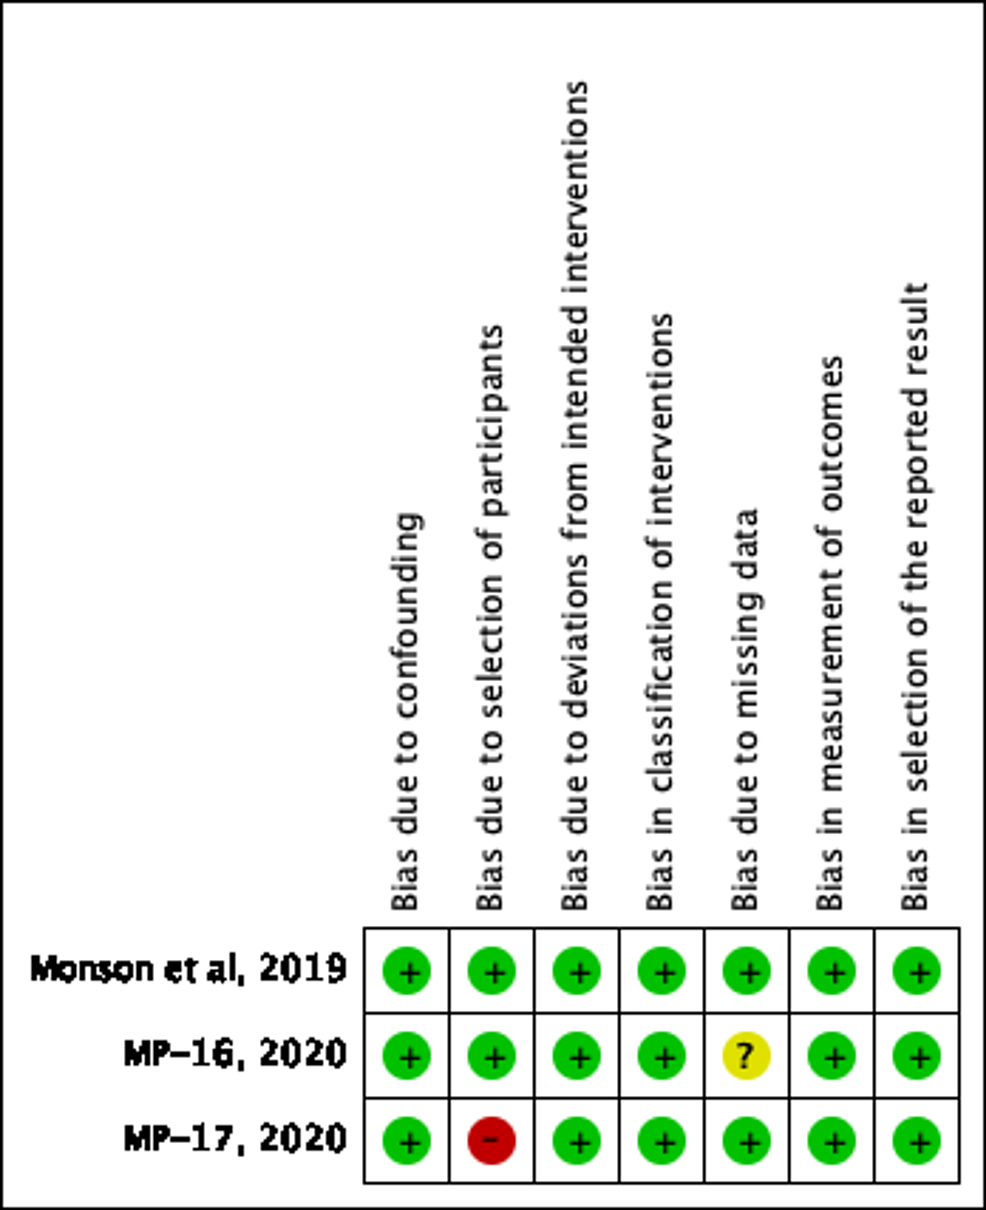 Risk-of-Bias-Summary-for-Nonrandomized-Trials-MP-16,-MP-17,-MPVA-1-Using-ROBT-RevMan-5.4